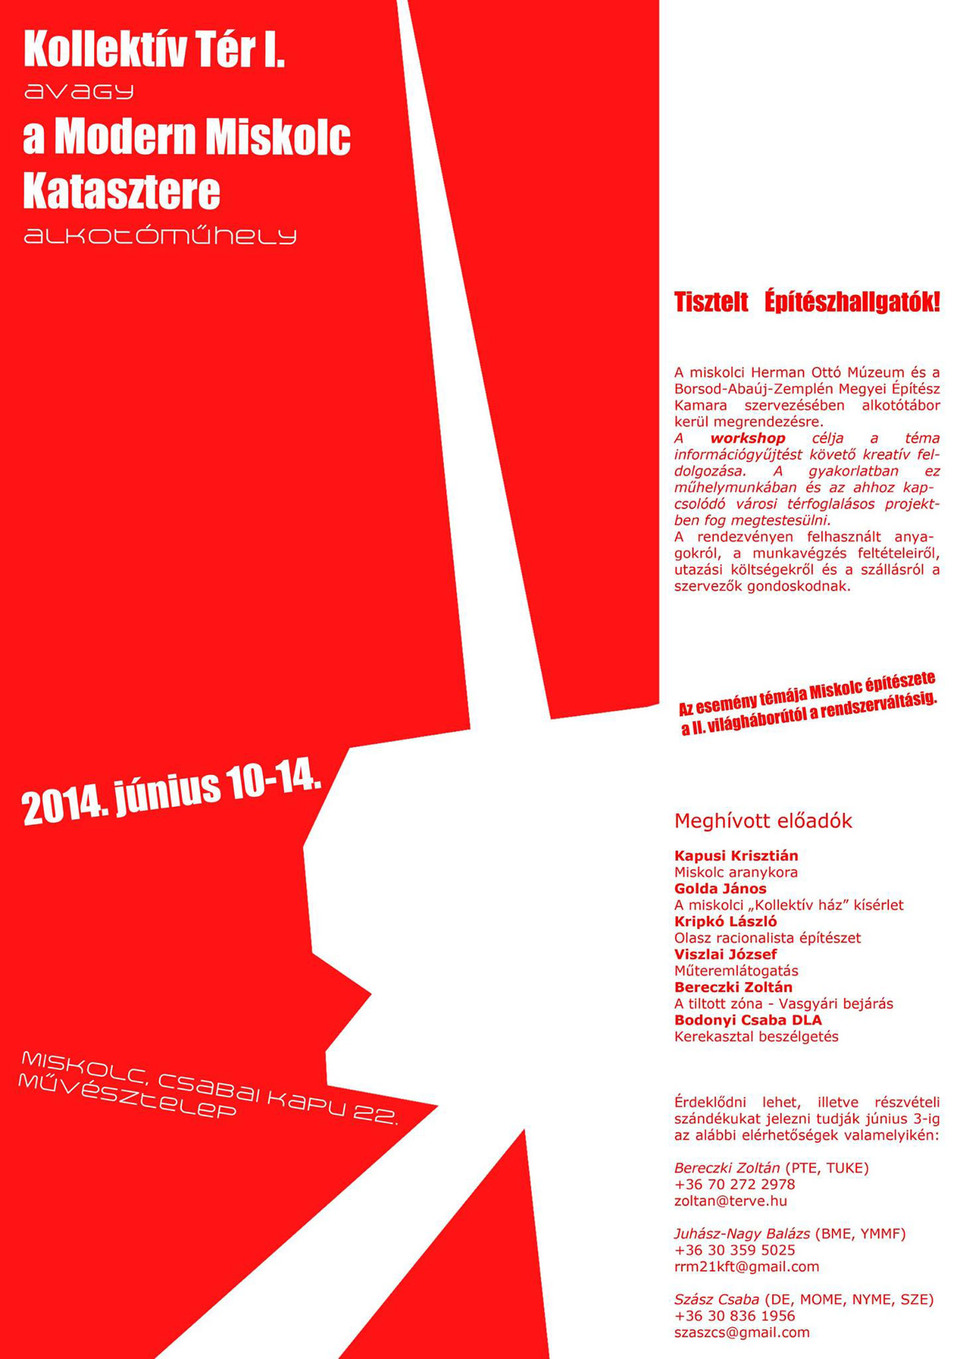 Példák az emblémahasználatra. A Kollektív tér I. műhelymunka plakátja, 2014. Forrás: Balogh Attila  
